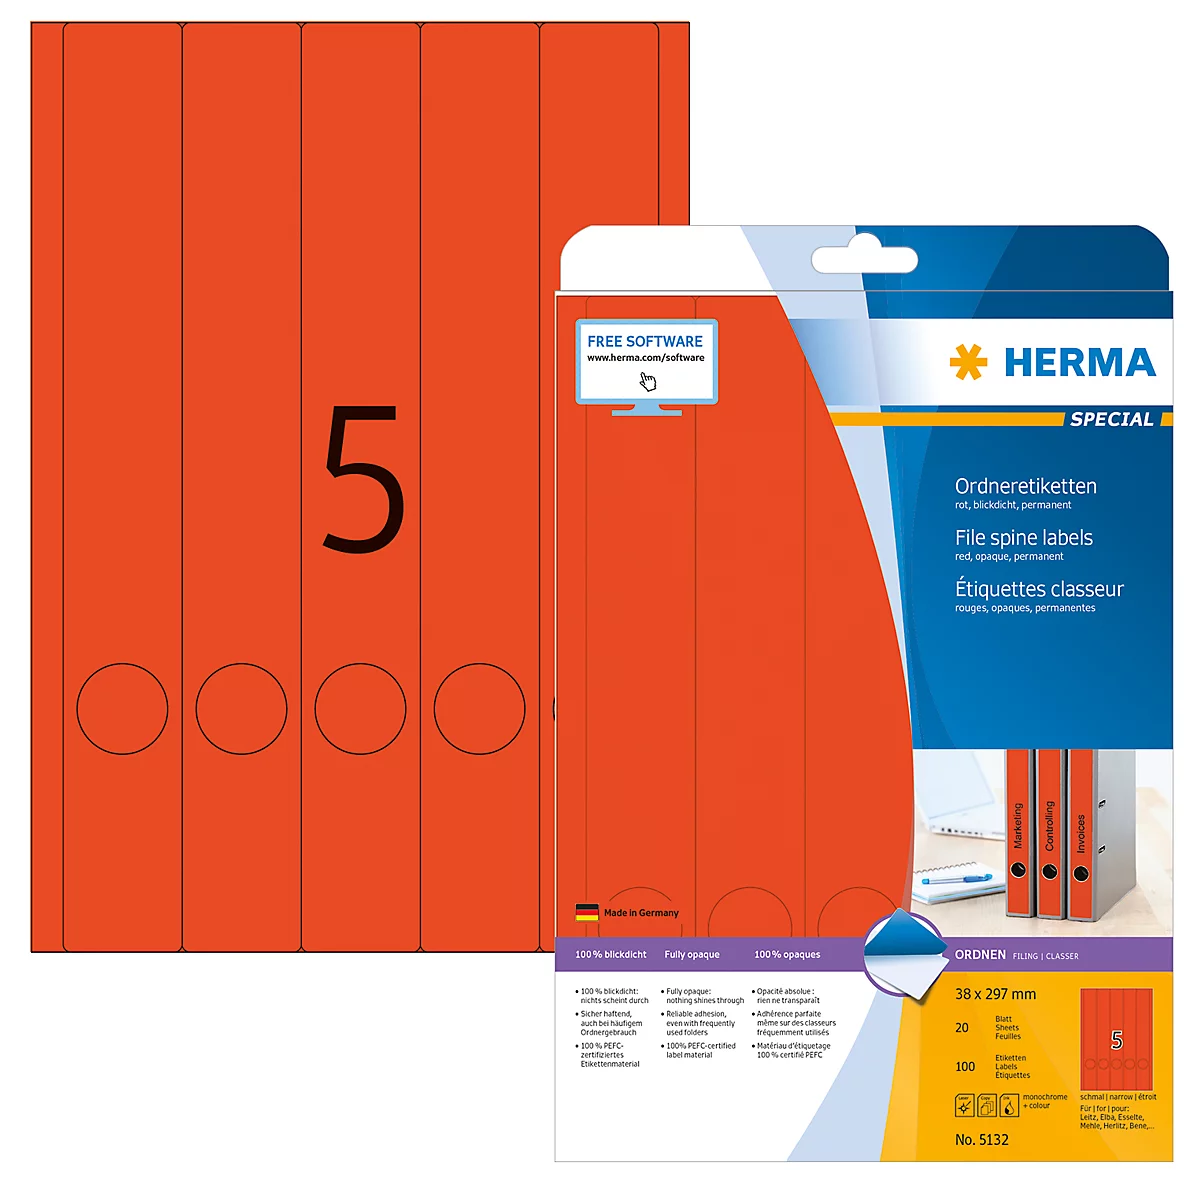 Herma Ordneretiketten A4, 297 mm lang, permanent haftend/bedruckbar, 100 Stück, rot